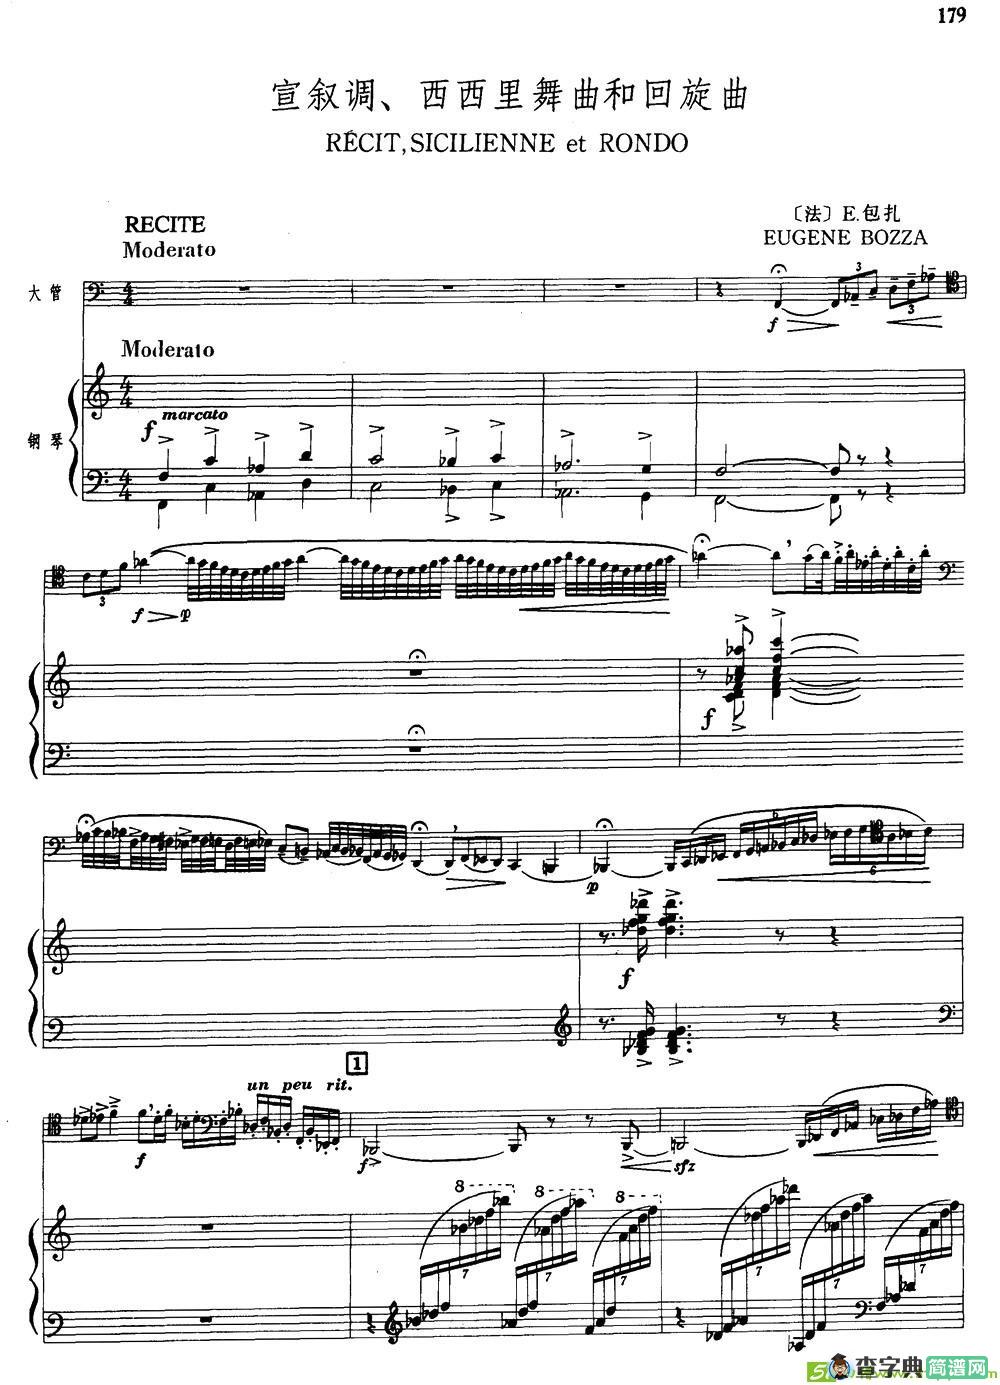 宣叙调、西西里舞曲和回旋曲铜管谱([法]E·包扎作曲)